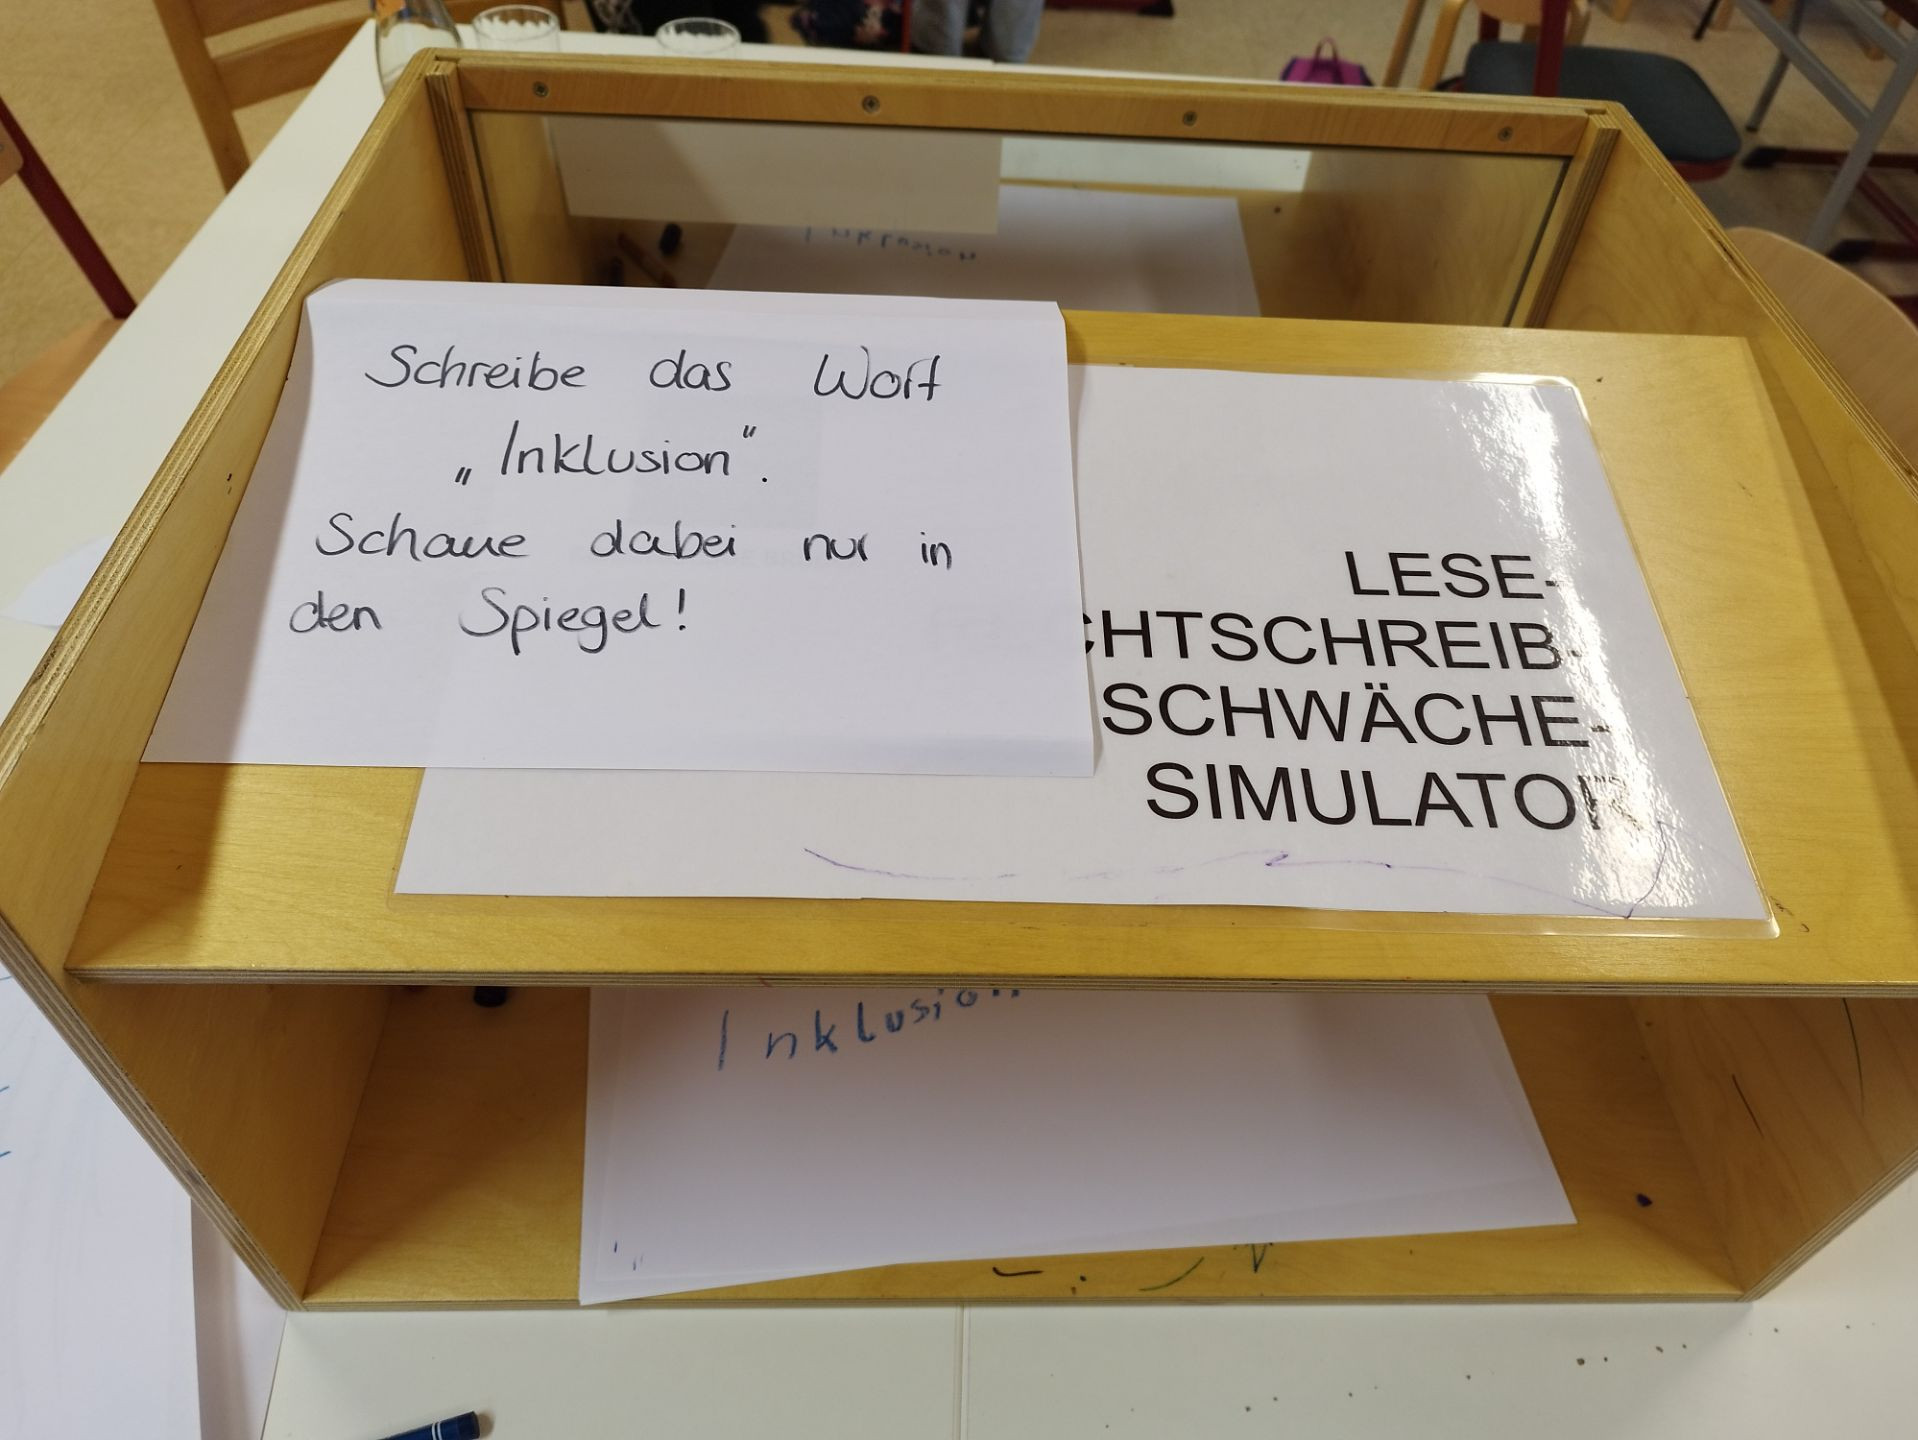 Lese-Rechtschreib-Schwäche-Simulator